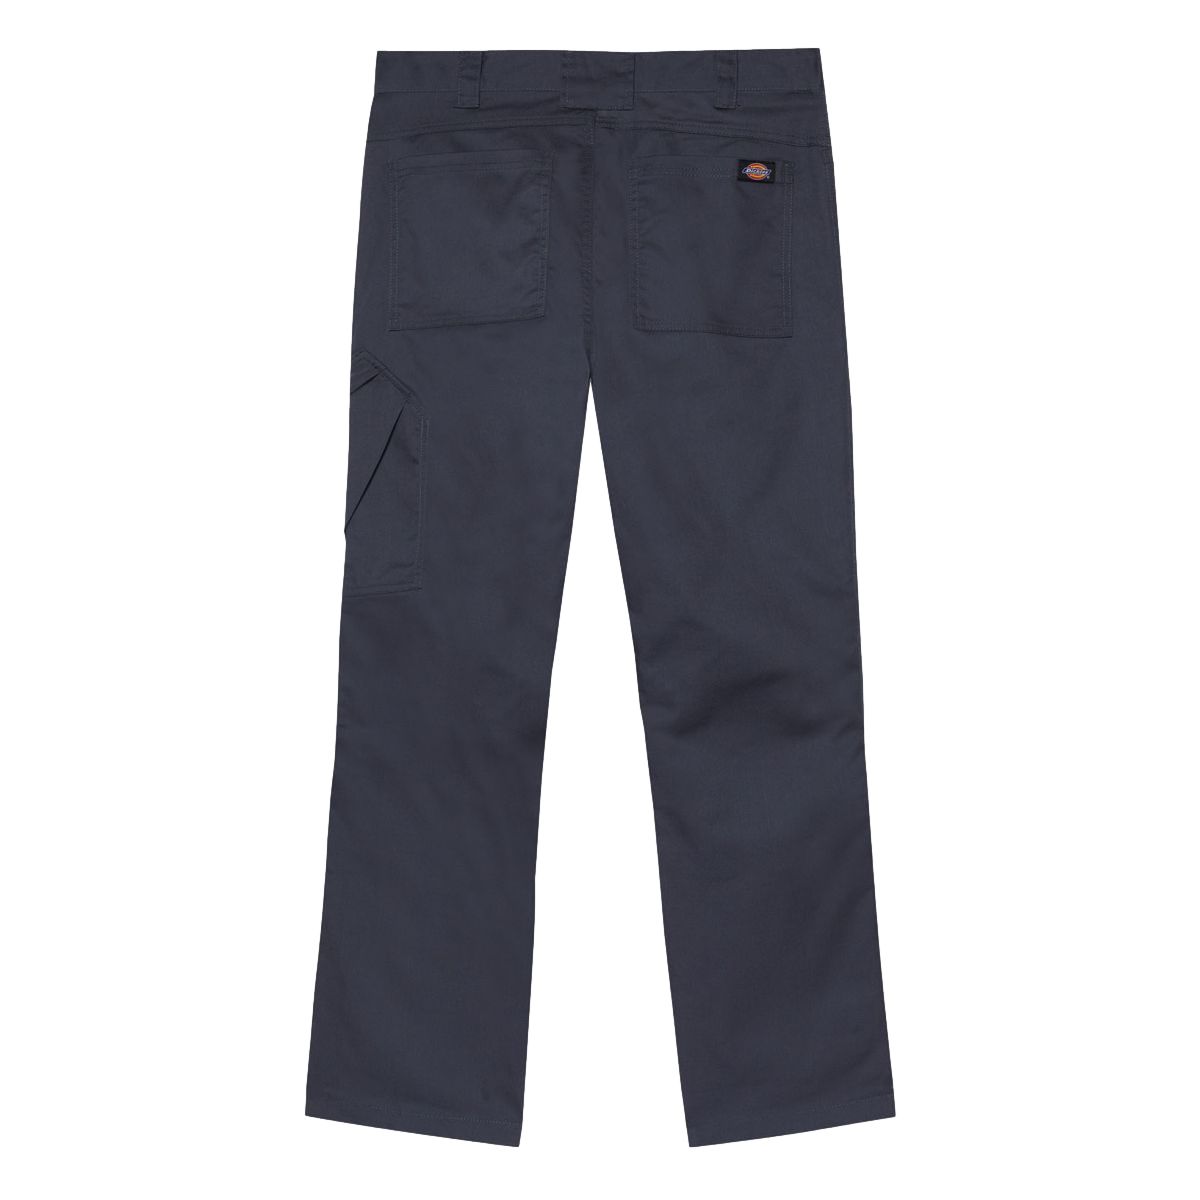 Pantalon de travail Action Flex gris - Dickies - Taille 50 2